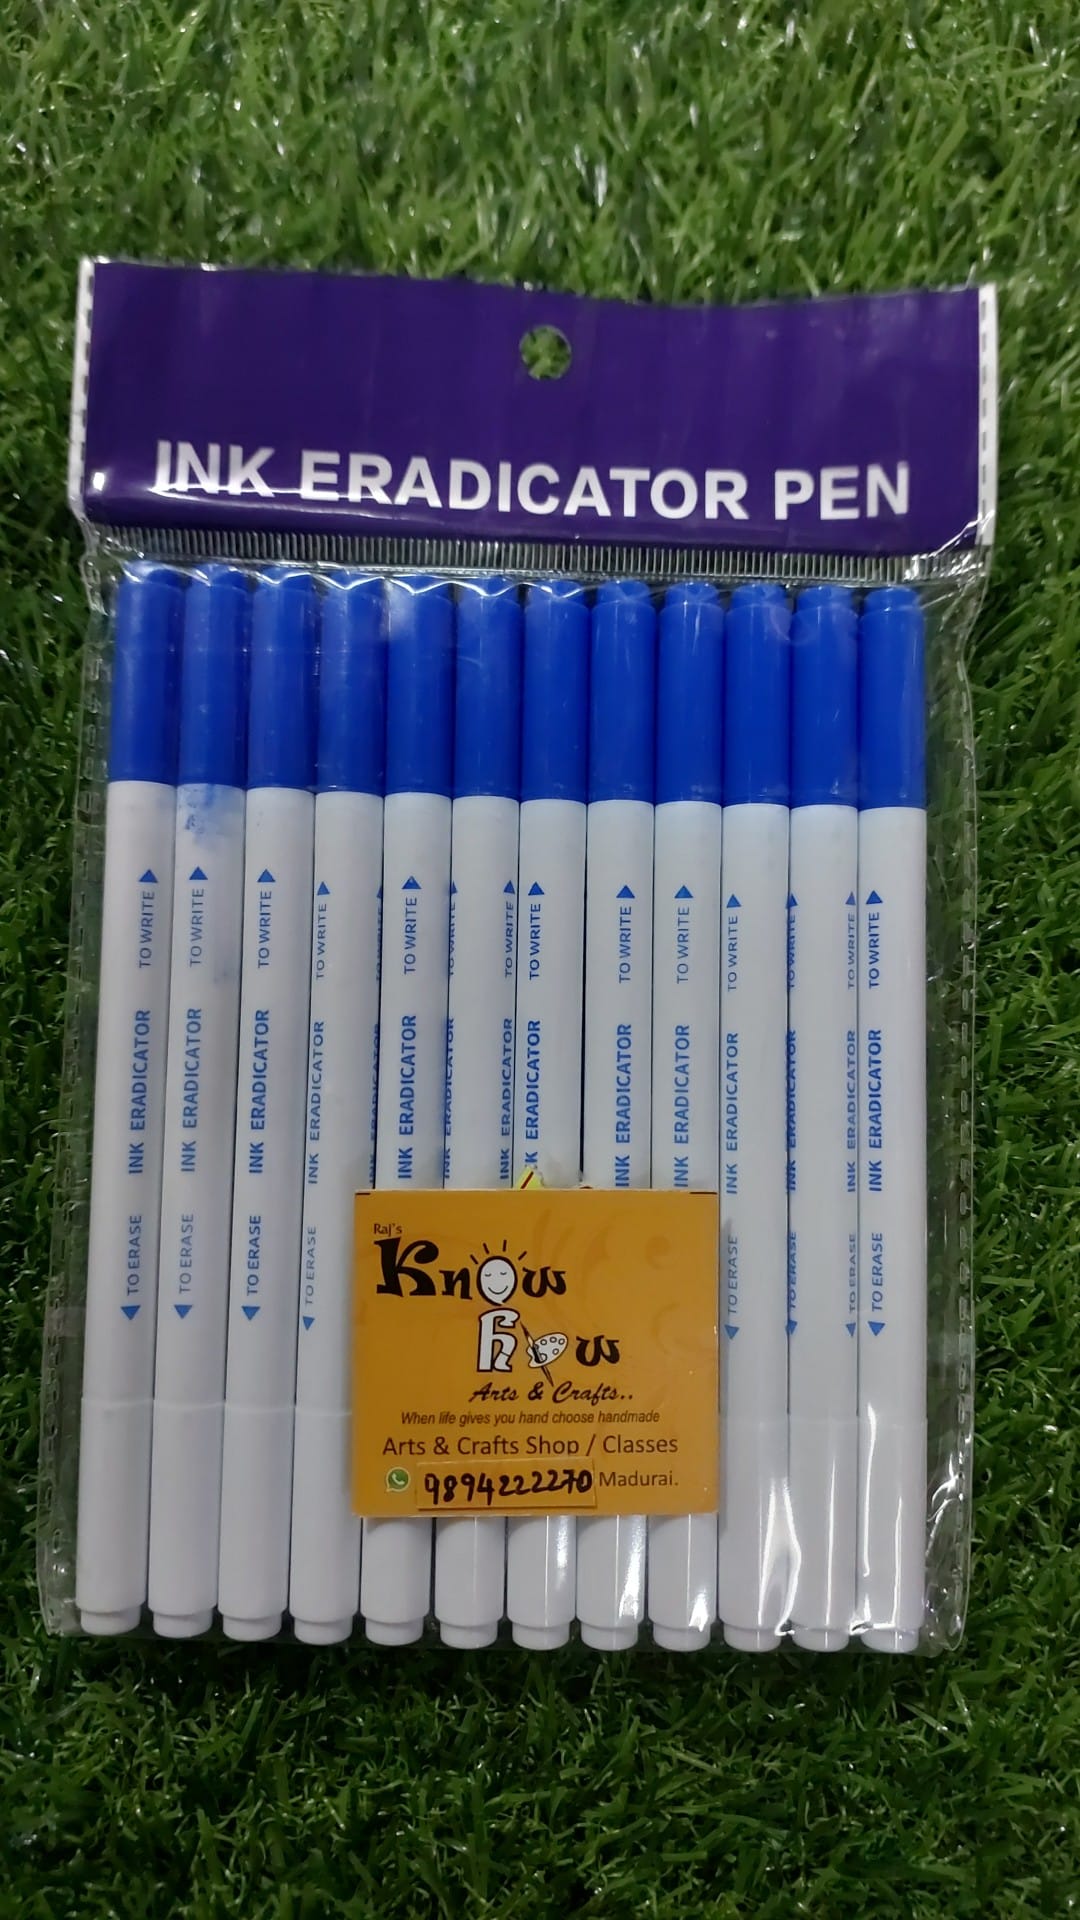 Pelikan pen